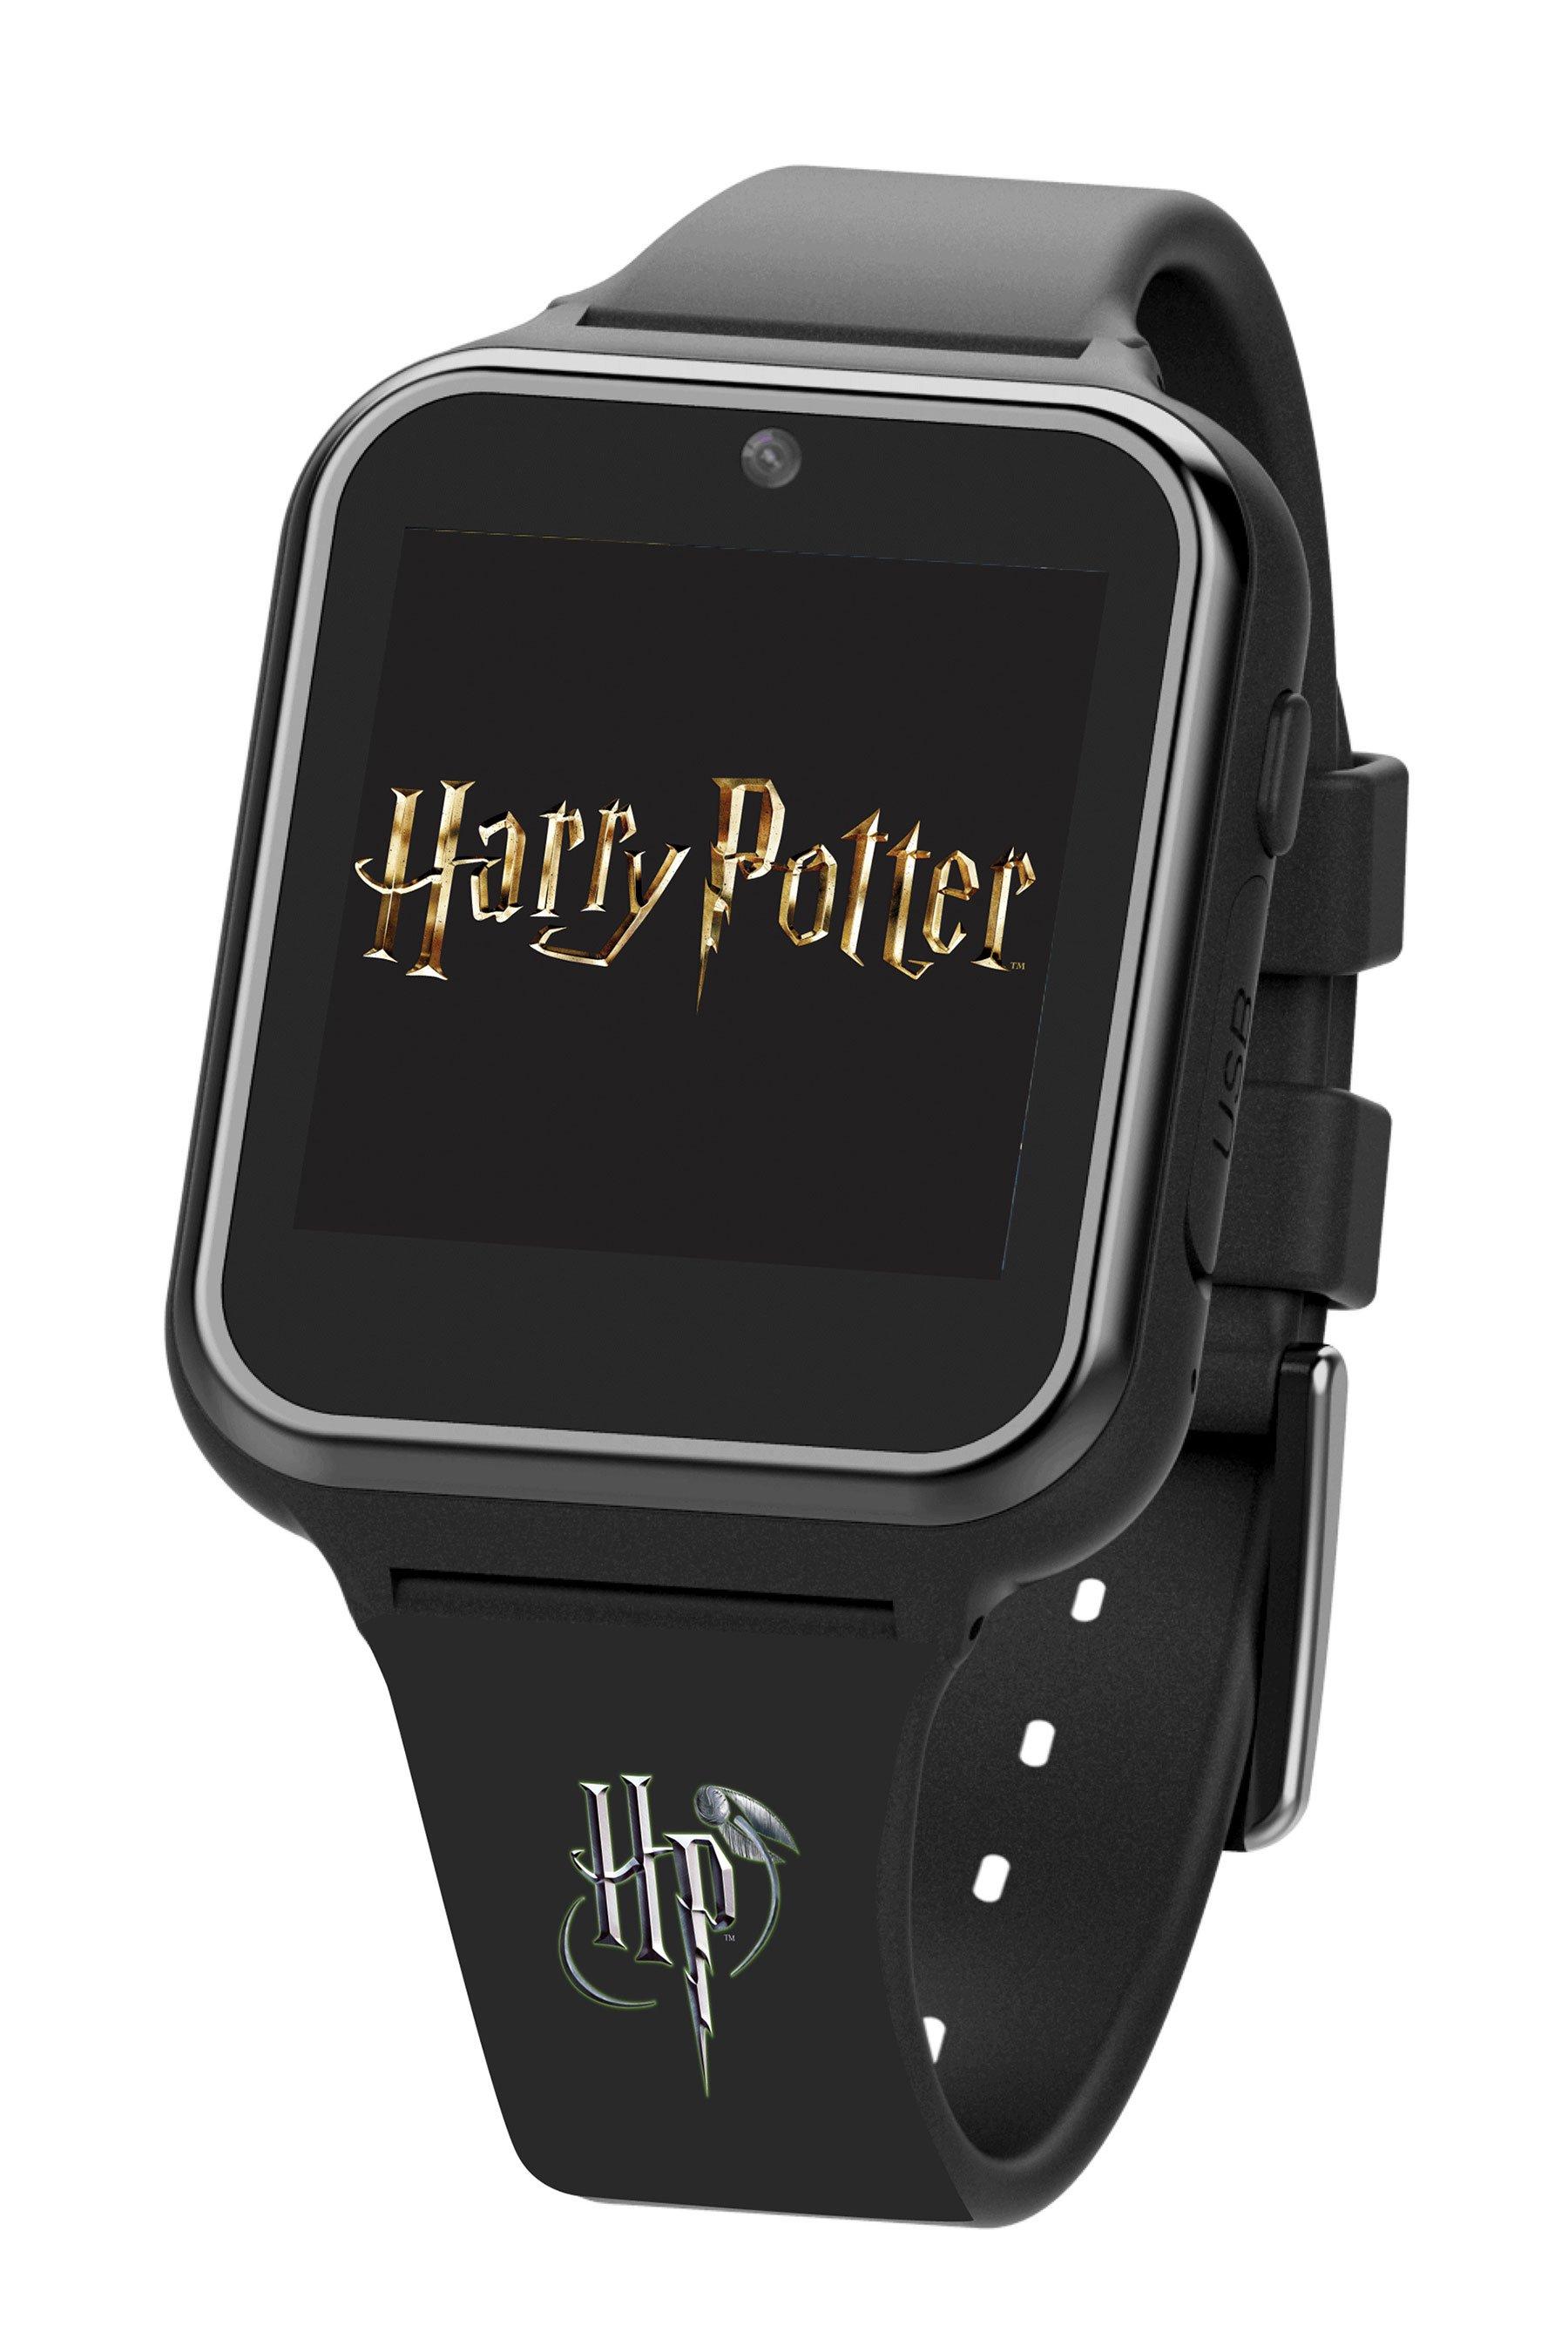 Harry Potter Smart Watch | Studio